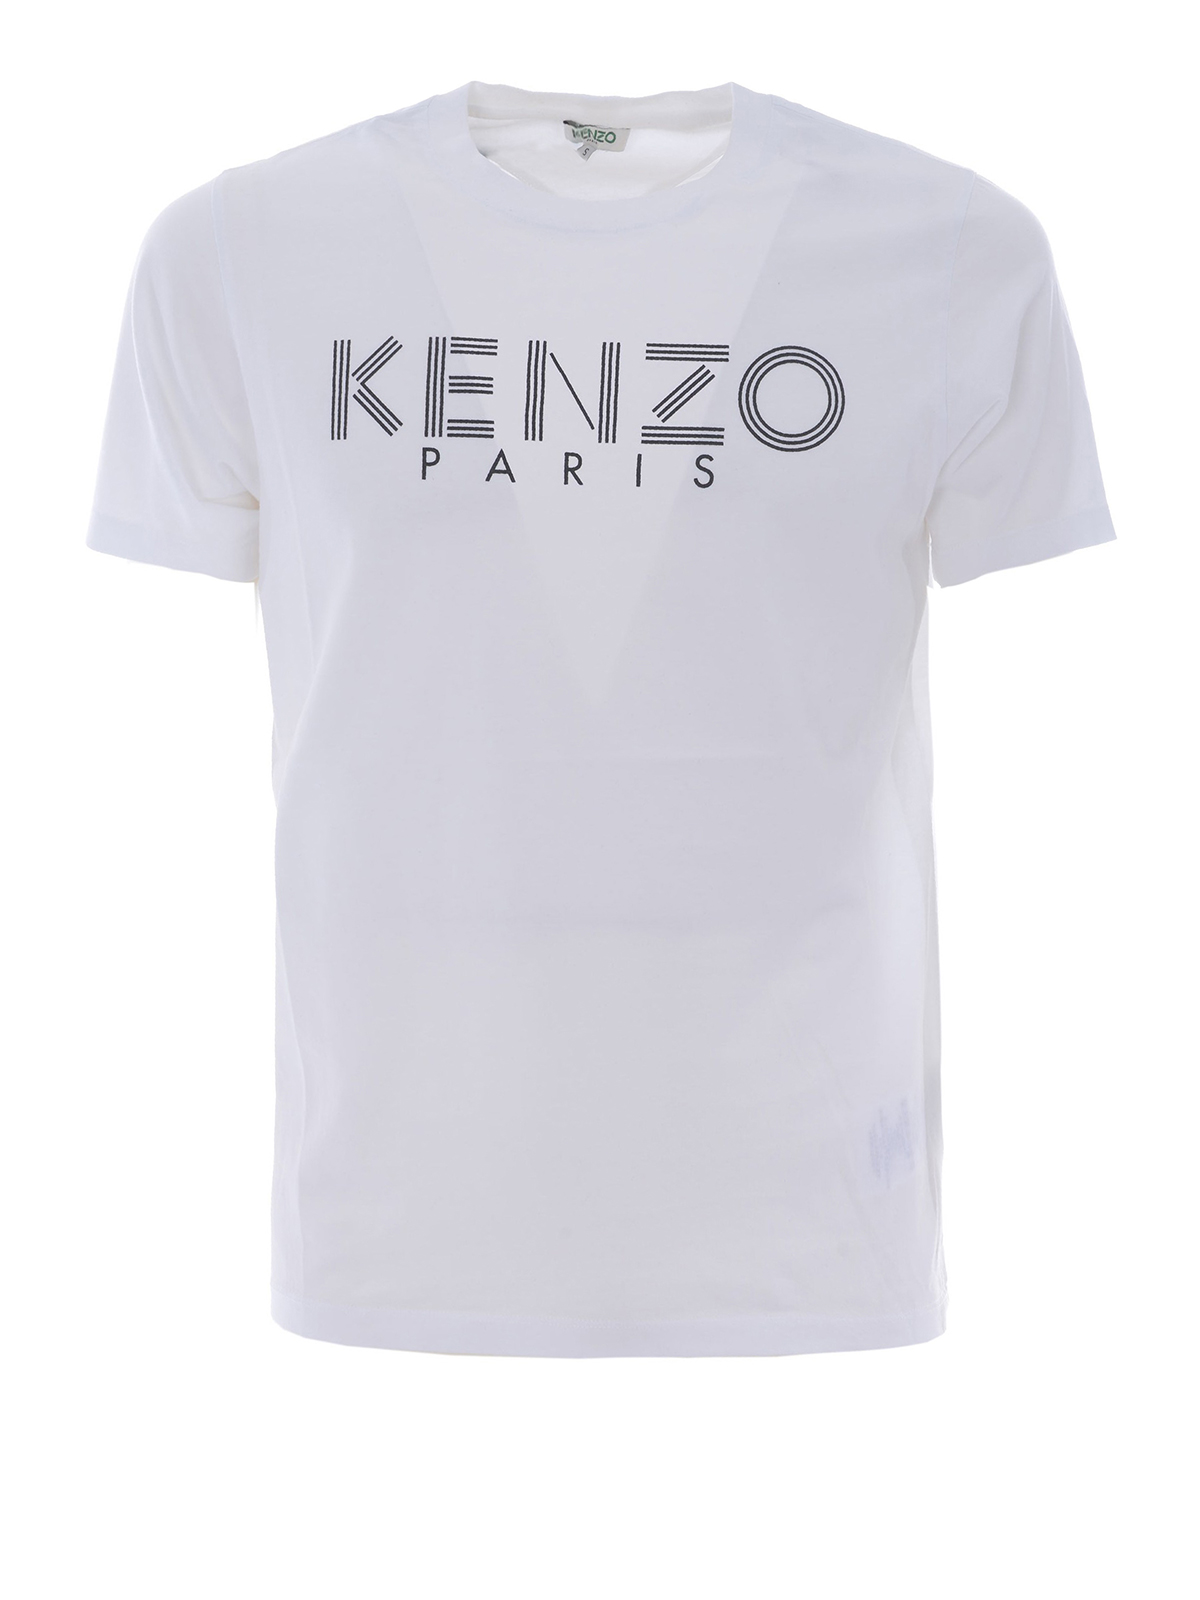 T-shirts Kenzo - Kenzo white T-shirt - F765TS0924SG01 | iKRIX.com